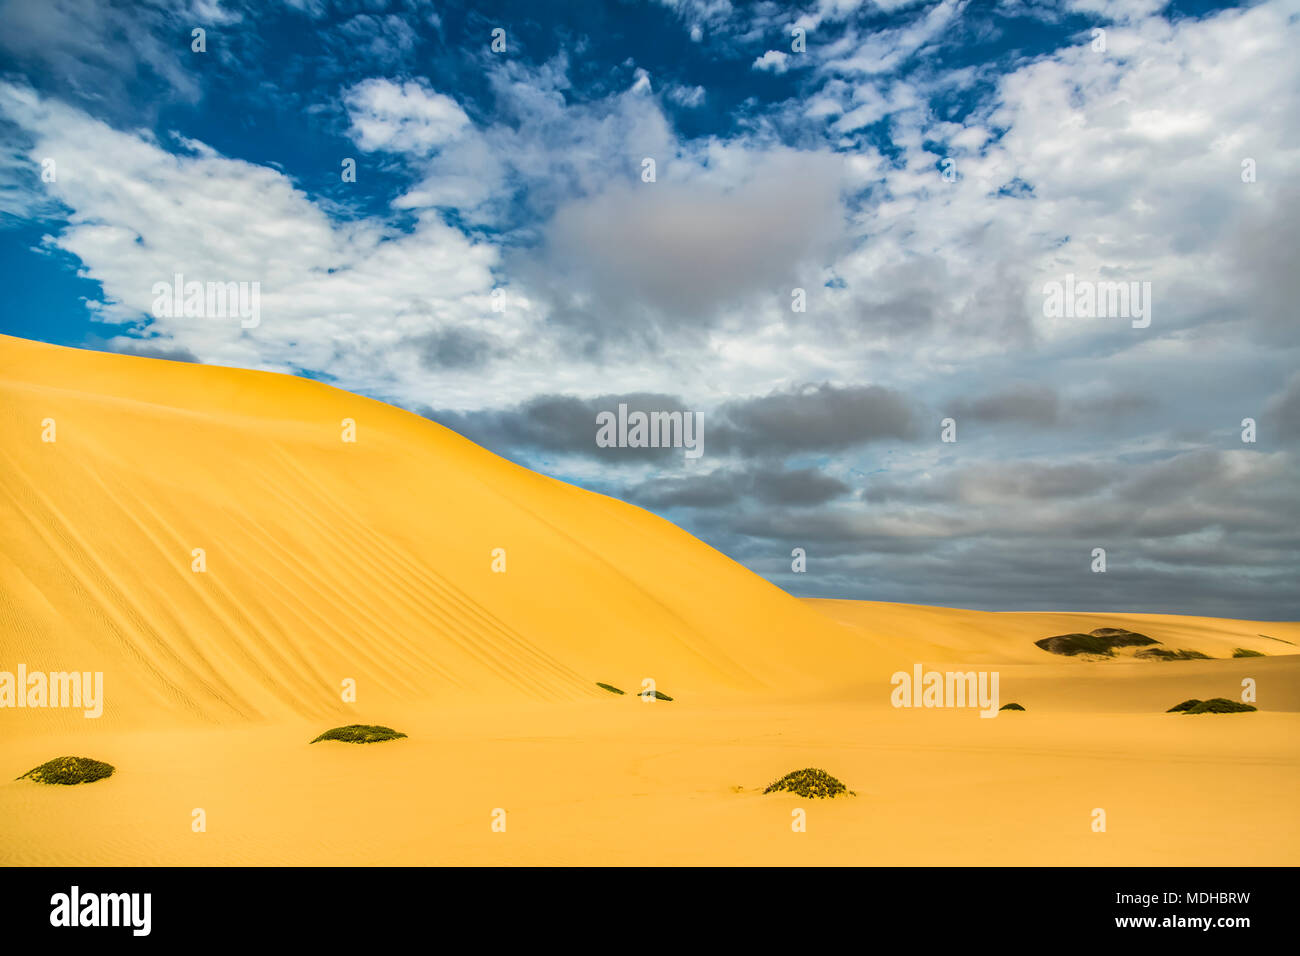 Golden sand dunes in the desert; Sossusvlei, Hardap Region, Namibia Stock Photo